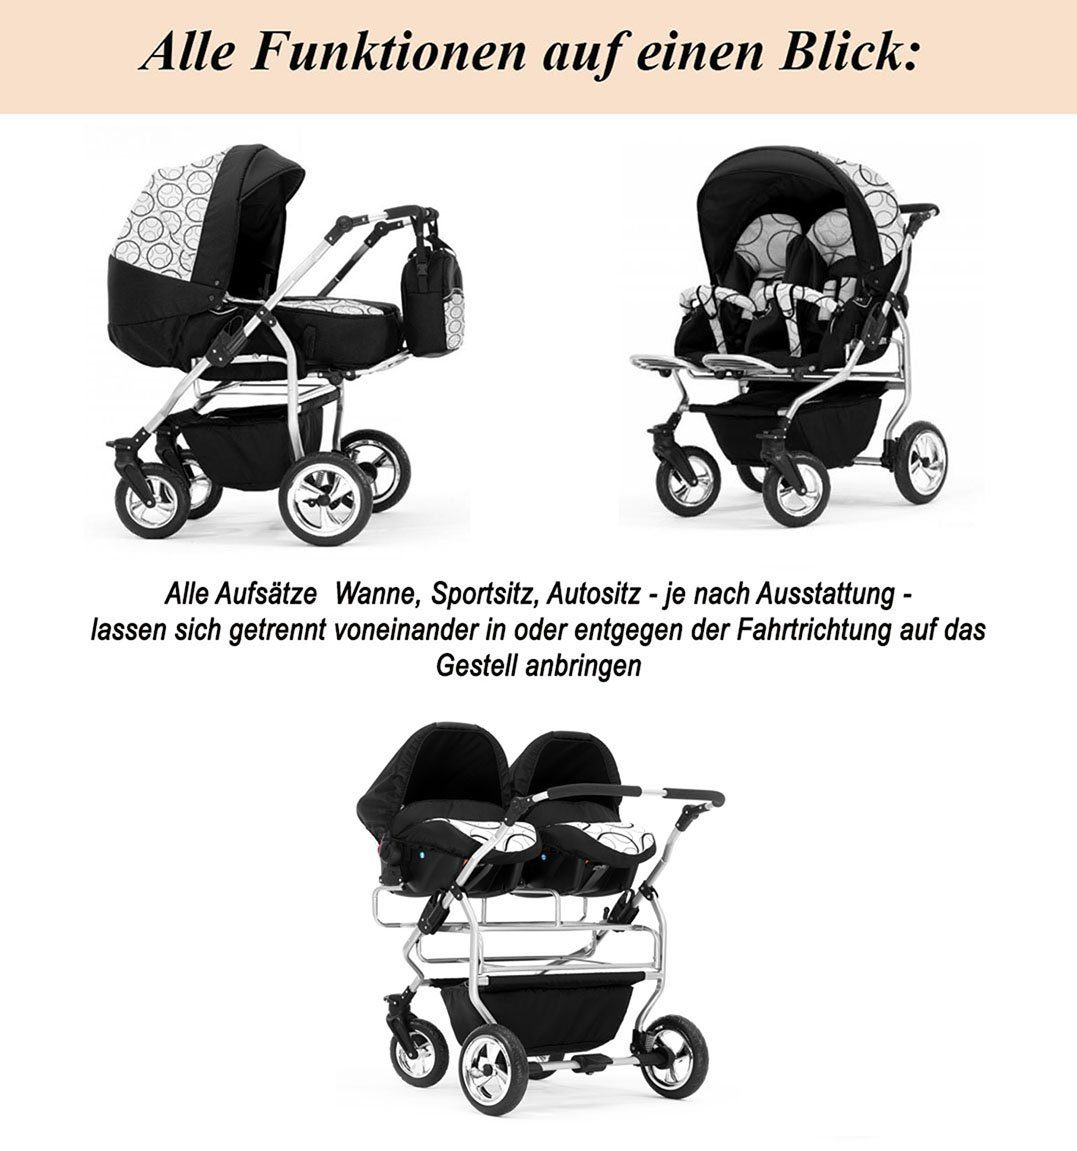 38 in - Elcar in Zwillingskinderwagen Teile Farben 1 11 2 Zwillings-Kombikinderwagen Schwarz-Weiß Duo -